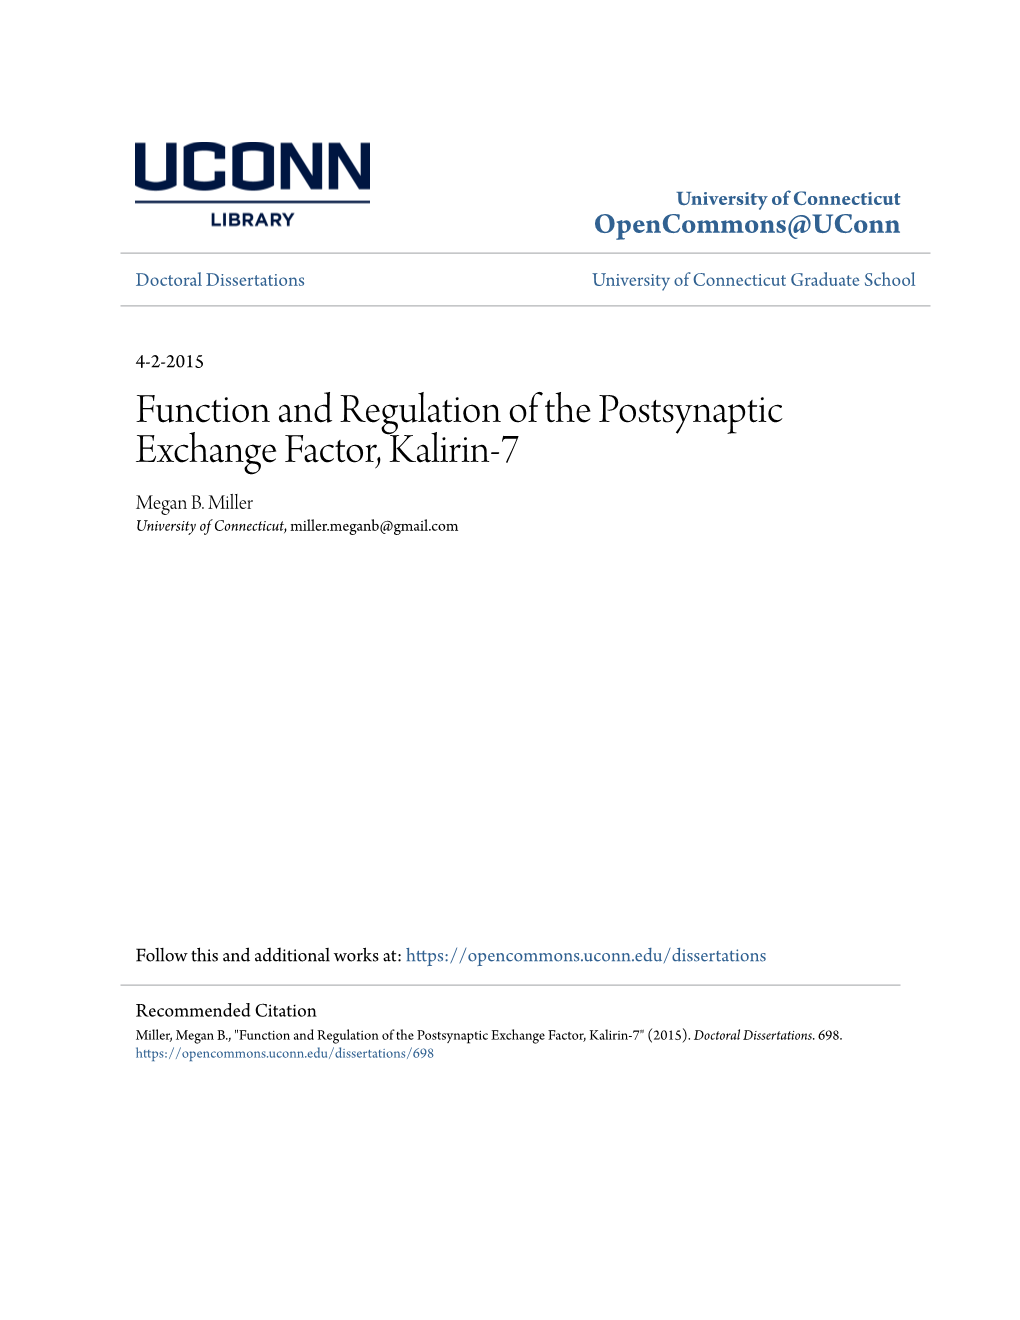 Function and Regulation of the Postsynaptic Exchange Factor, Kalirin-7 Megan B